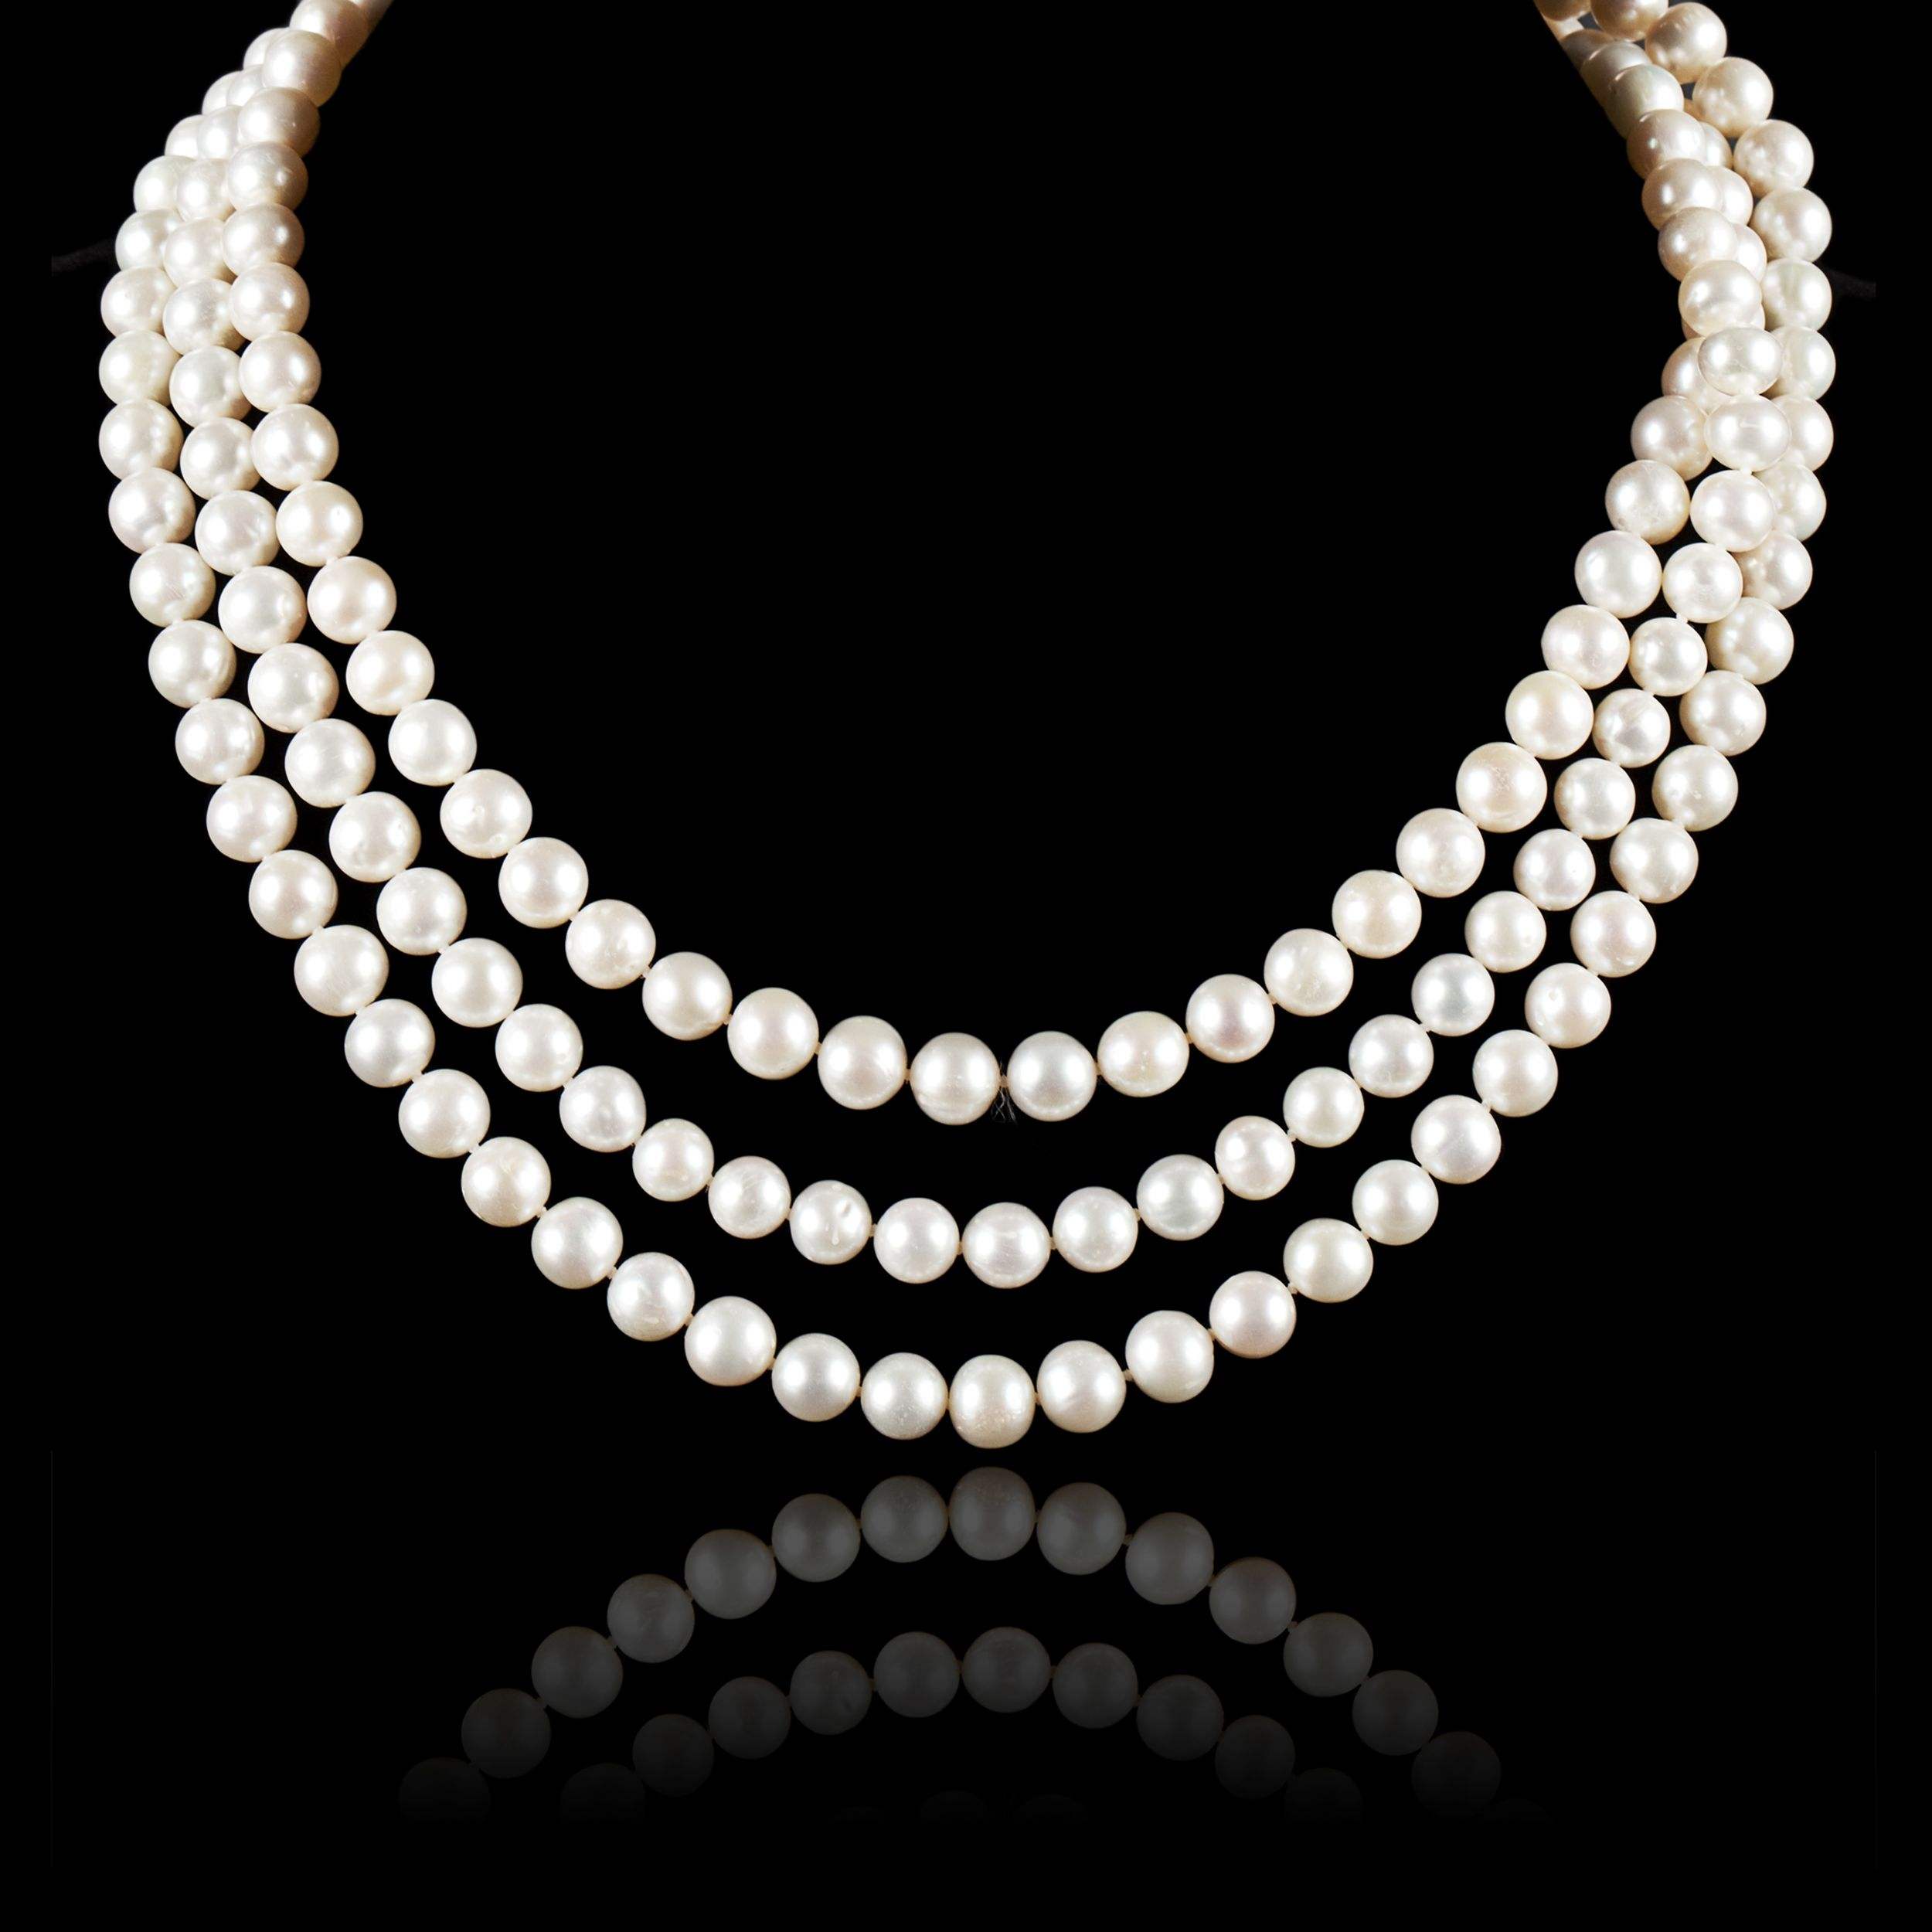 世界上最贵的珍珠项链图片